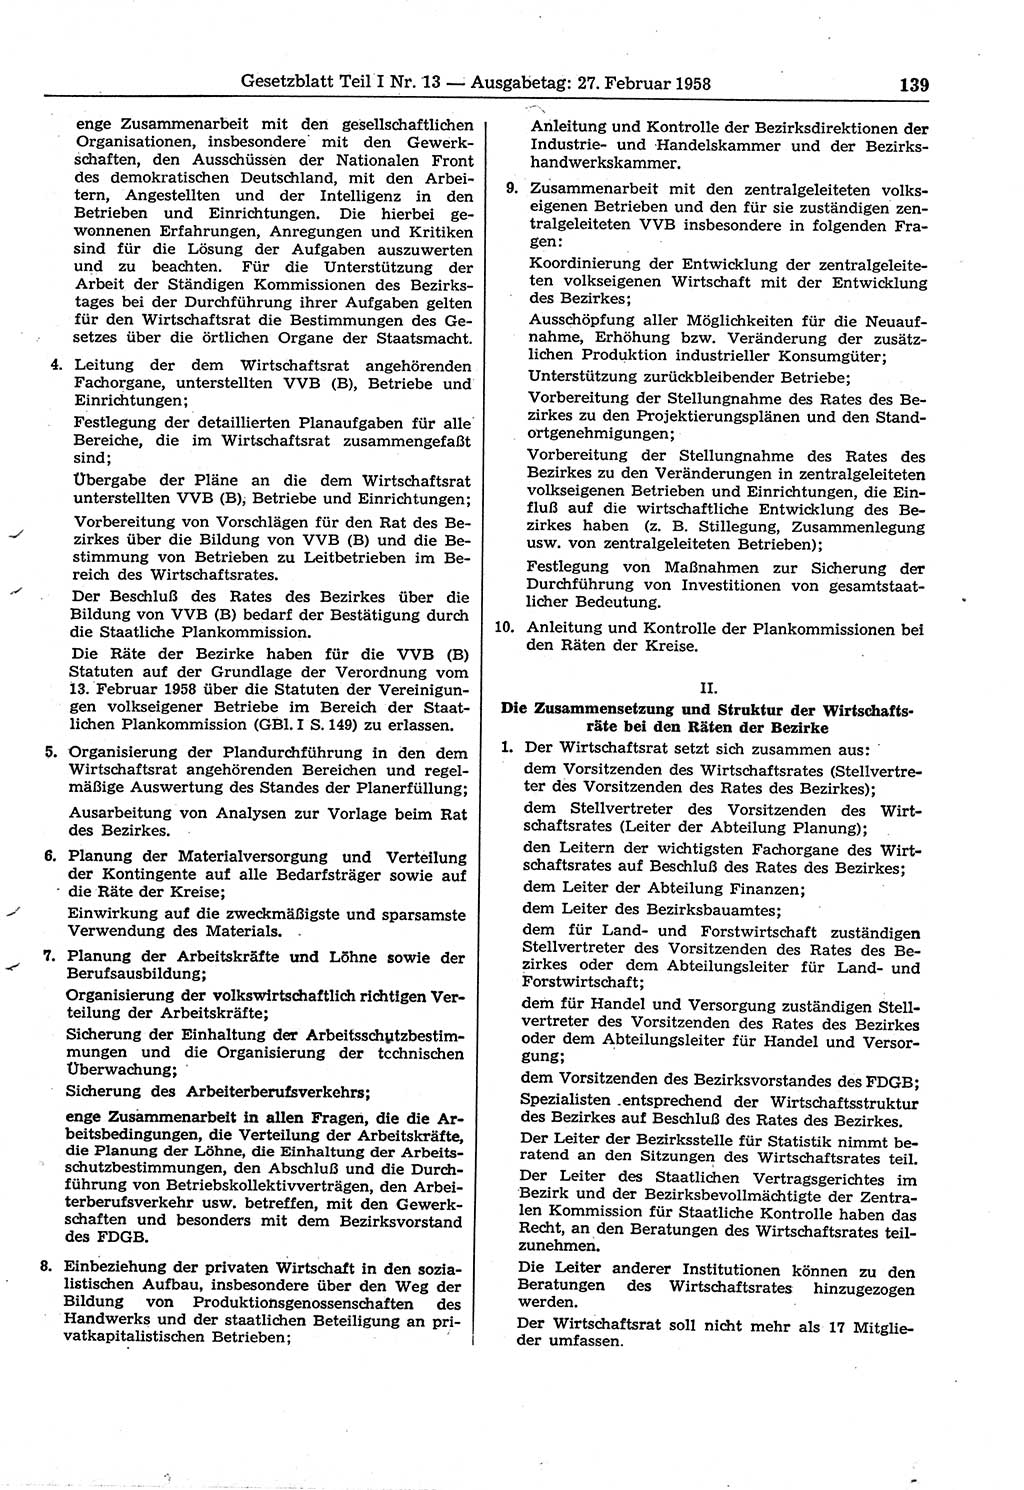 Gesetzblatt (GBl.) der Deutschen Demokratischen Republik (DDR) Teil Ⅰ 1958, Seite 139 (GBl. DDR Ⅰ 1958, S. 139)